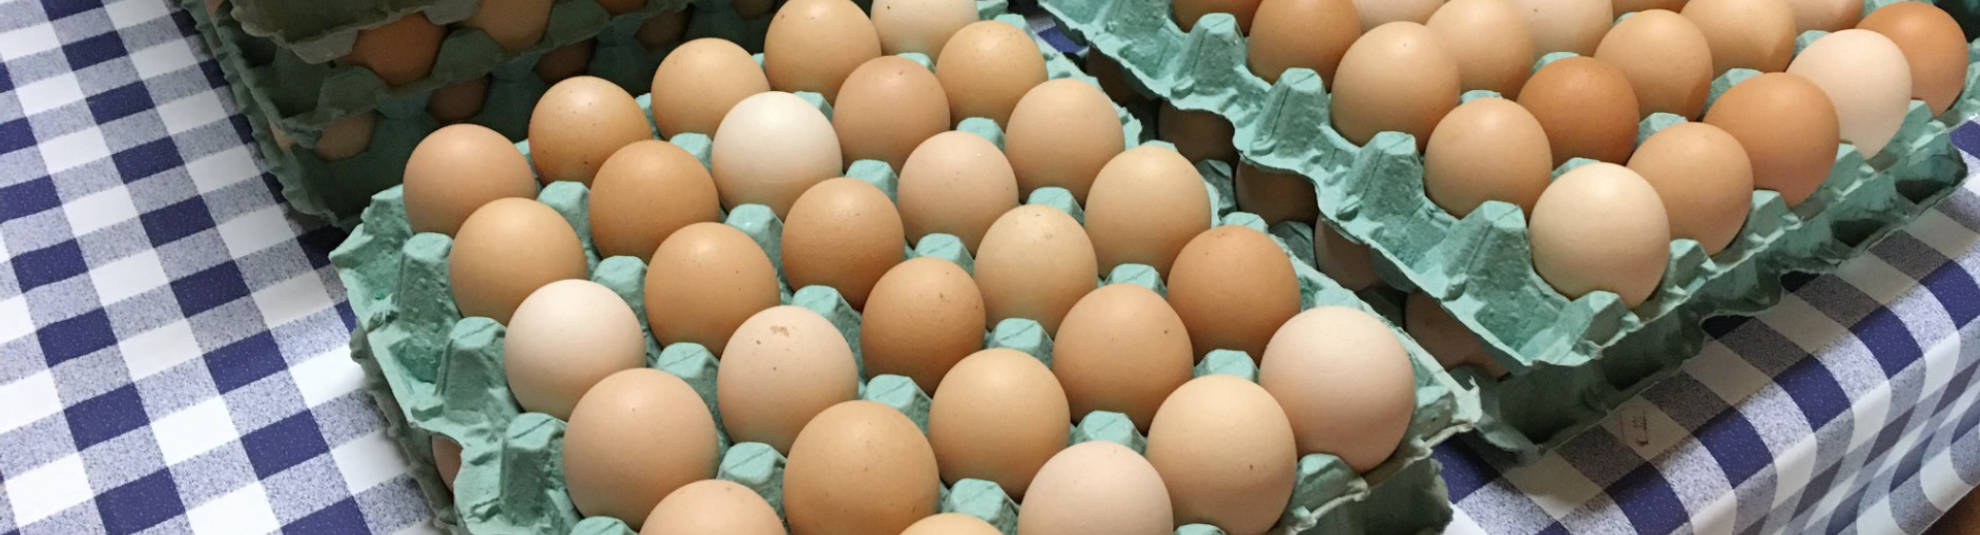 Αυγά από κότες ελεύθερης βοσκής